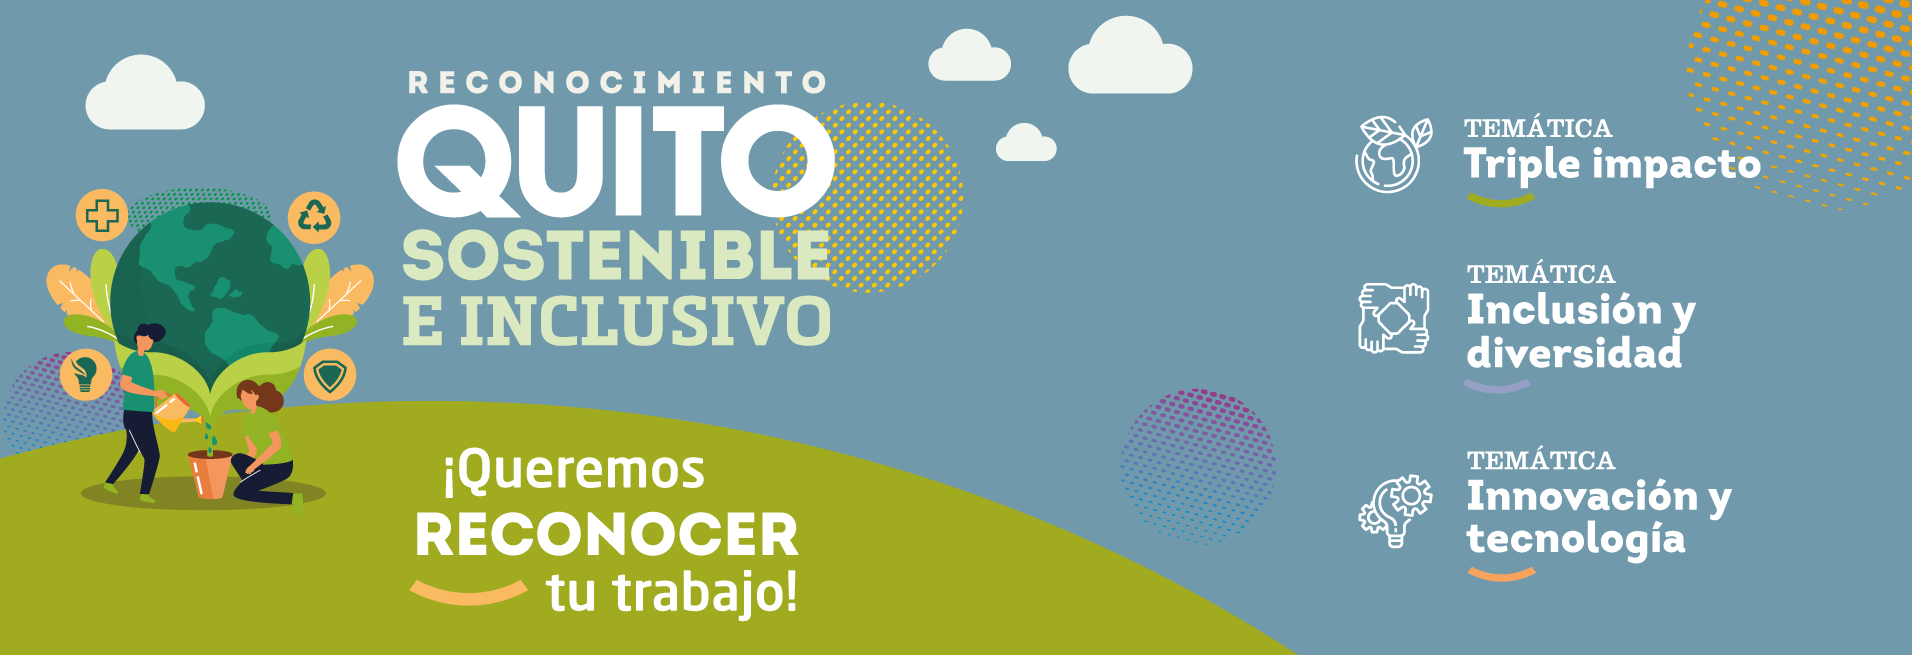 Banner reconocimiento Quito sostenible e inclusivo